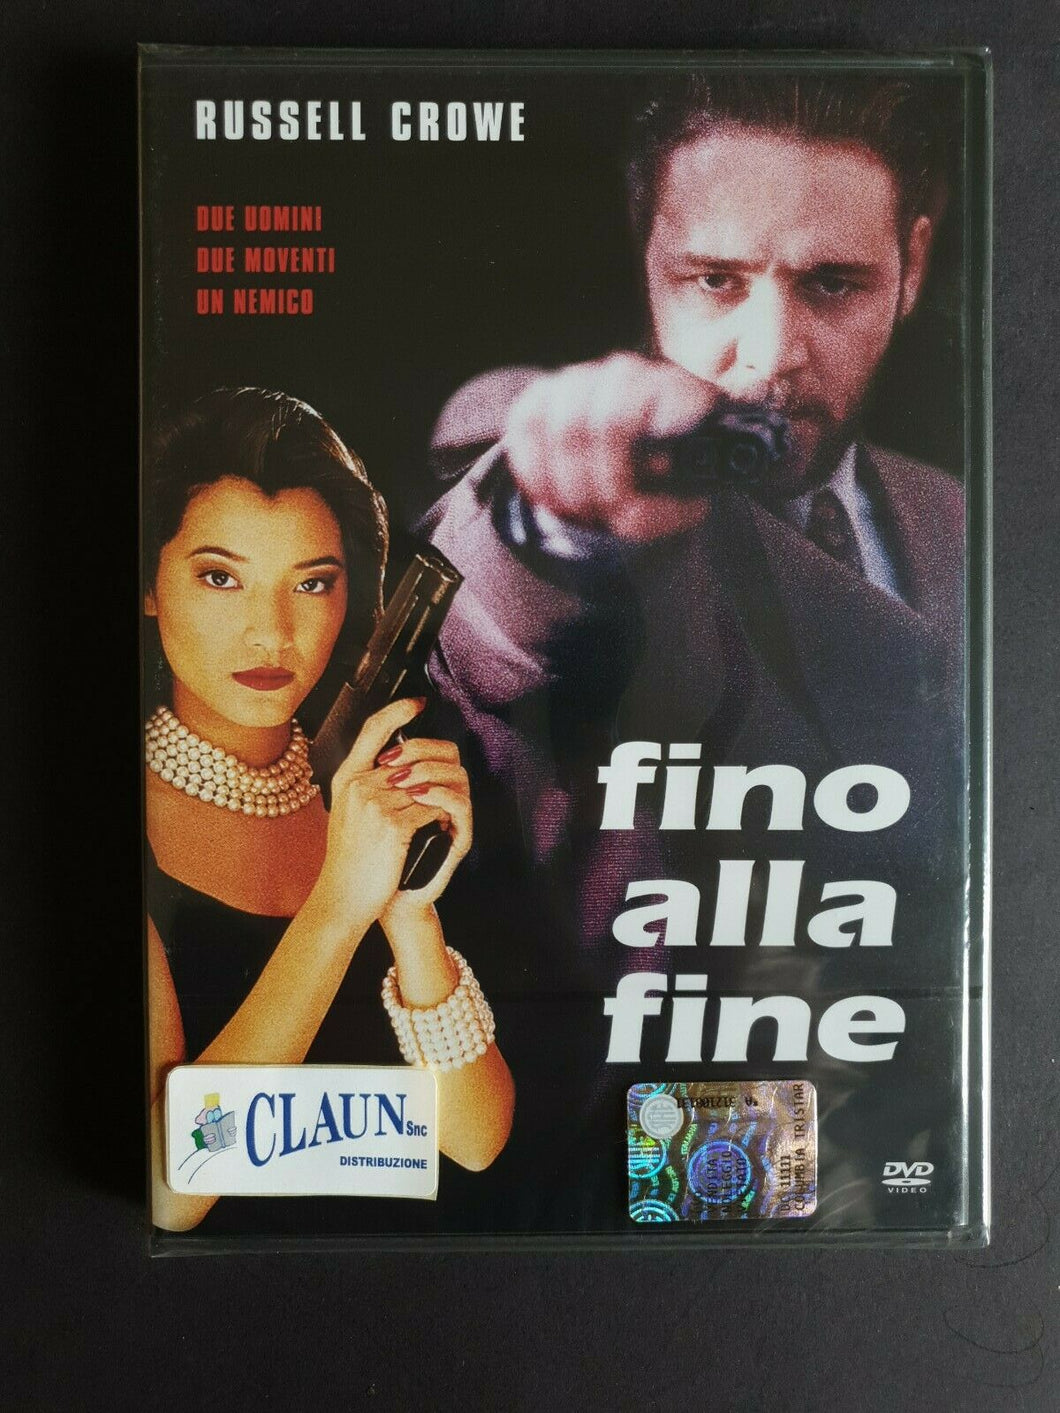 Fino alla fine (1996) Russell Crowe DVD Nuovo sigillato